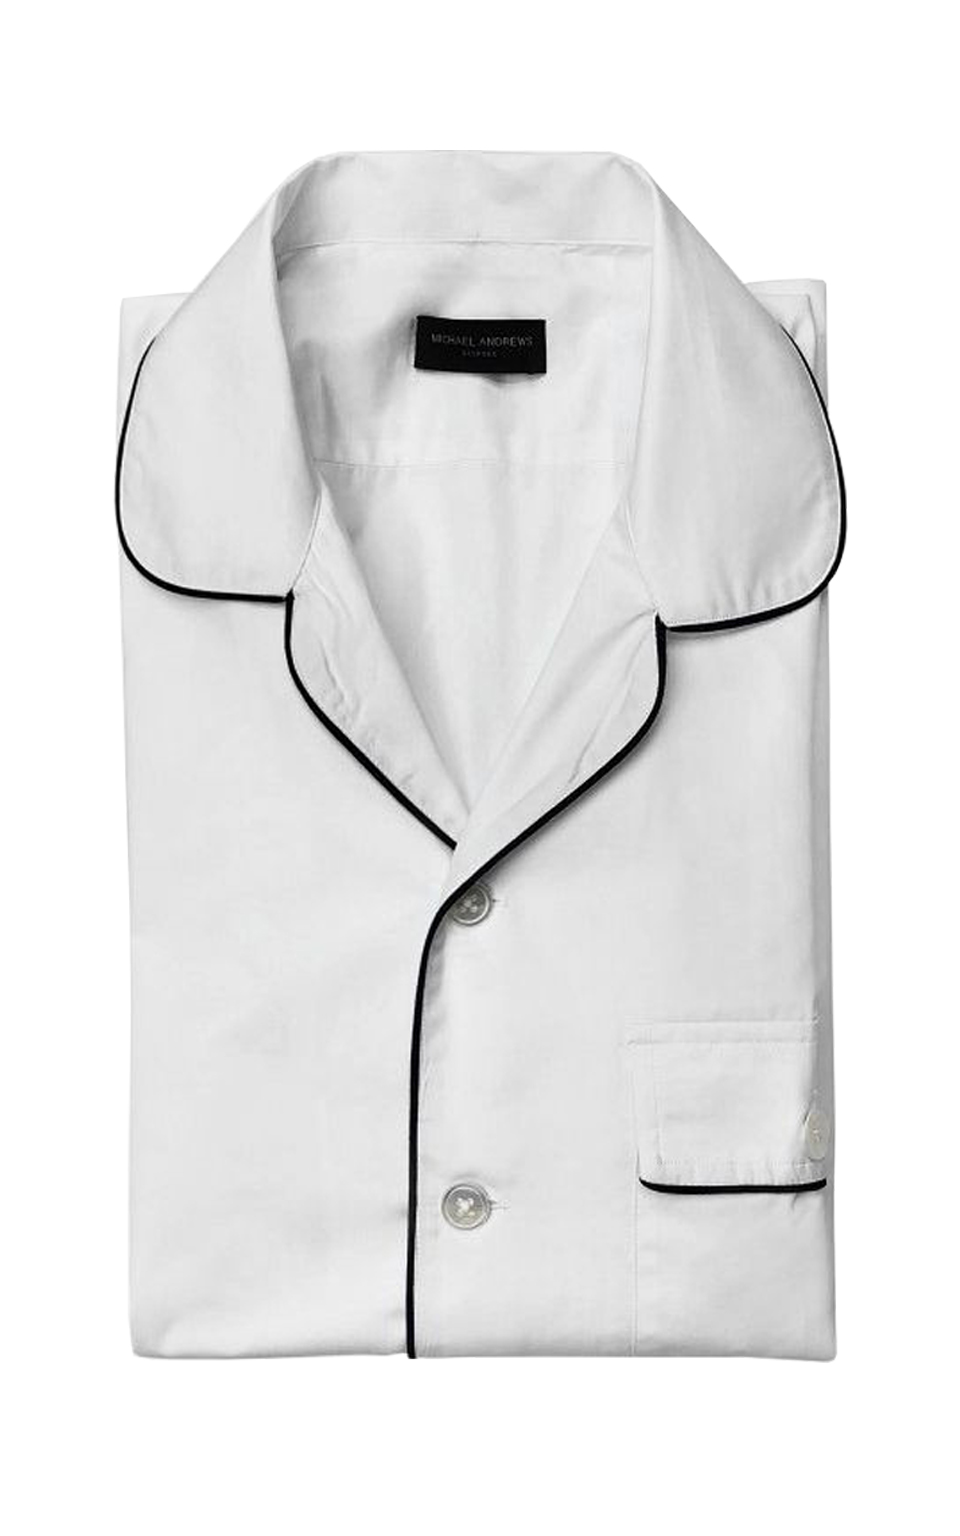 White Short Sleeve Pajama-Style Shirt